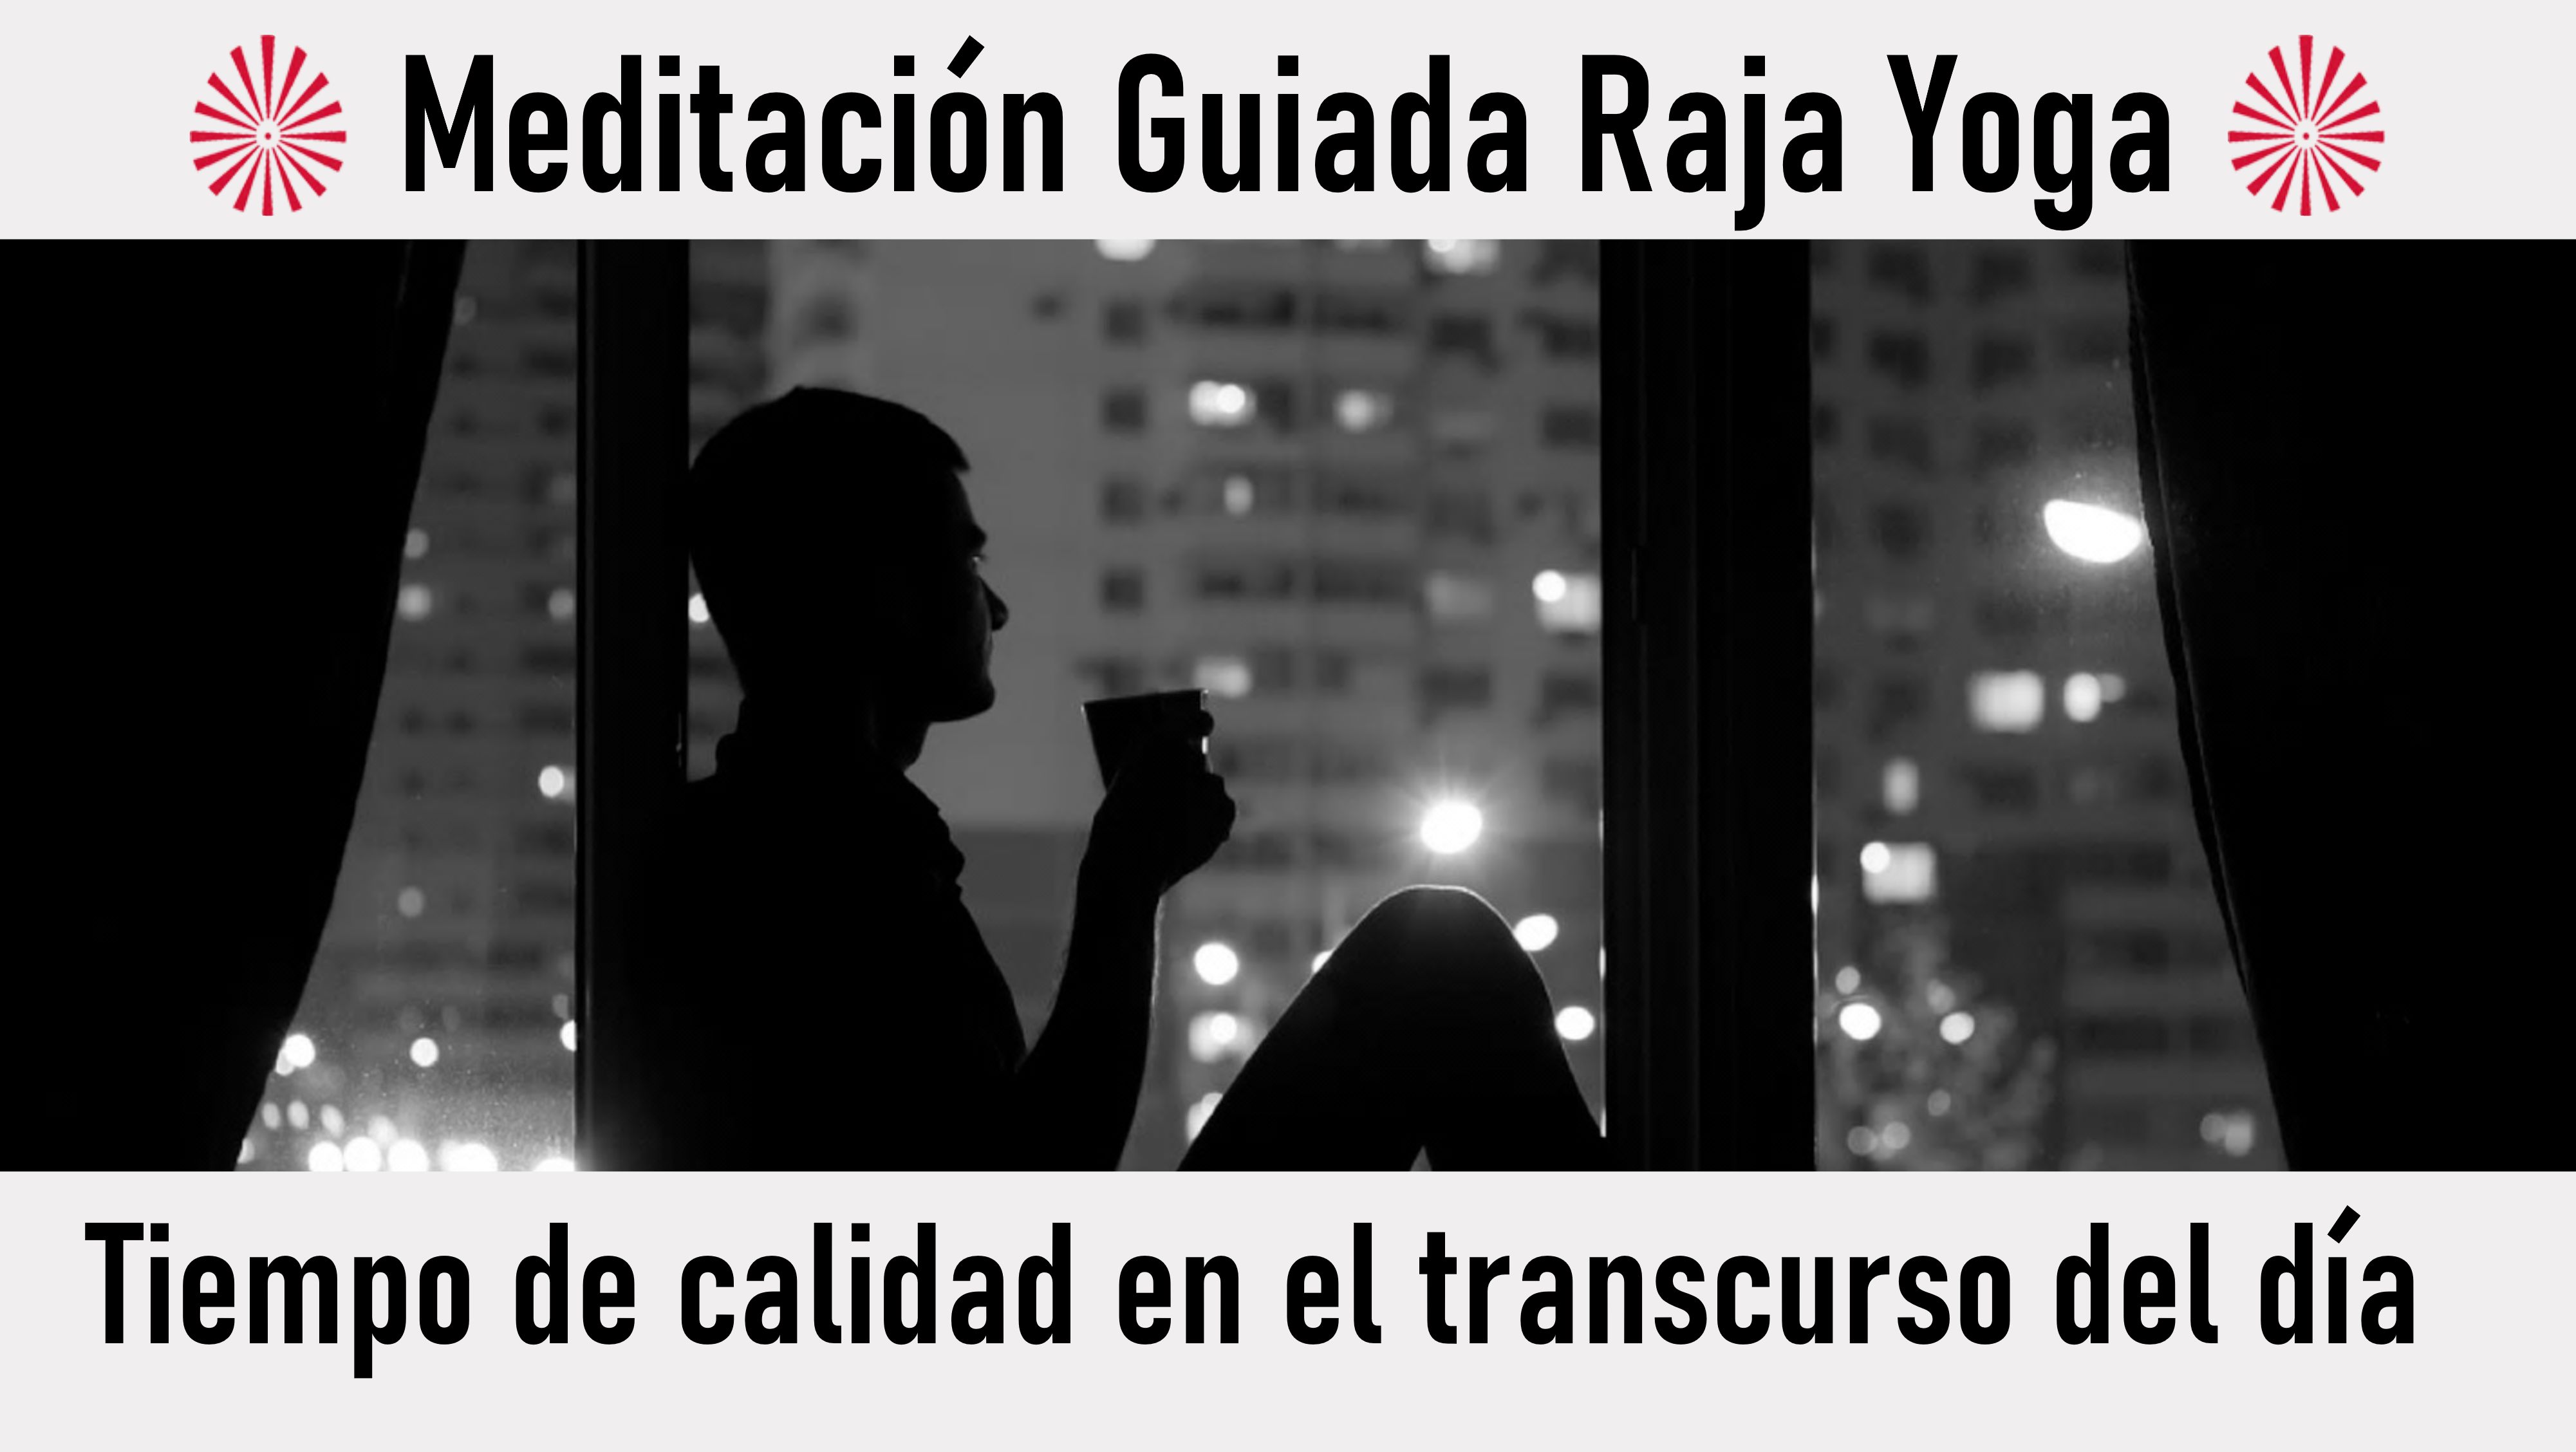 Meditación Raja Yoga: Tiempo de calidad en el transcurso del día (30 Julio 2020) On-line desde Barcelona